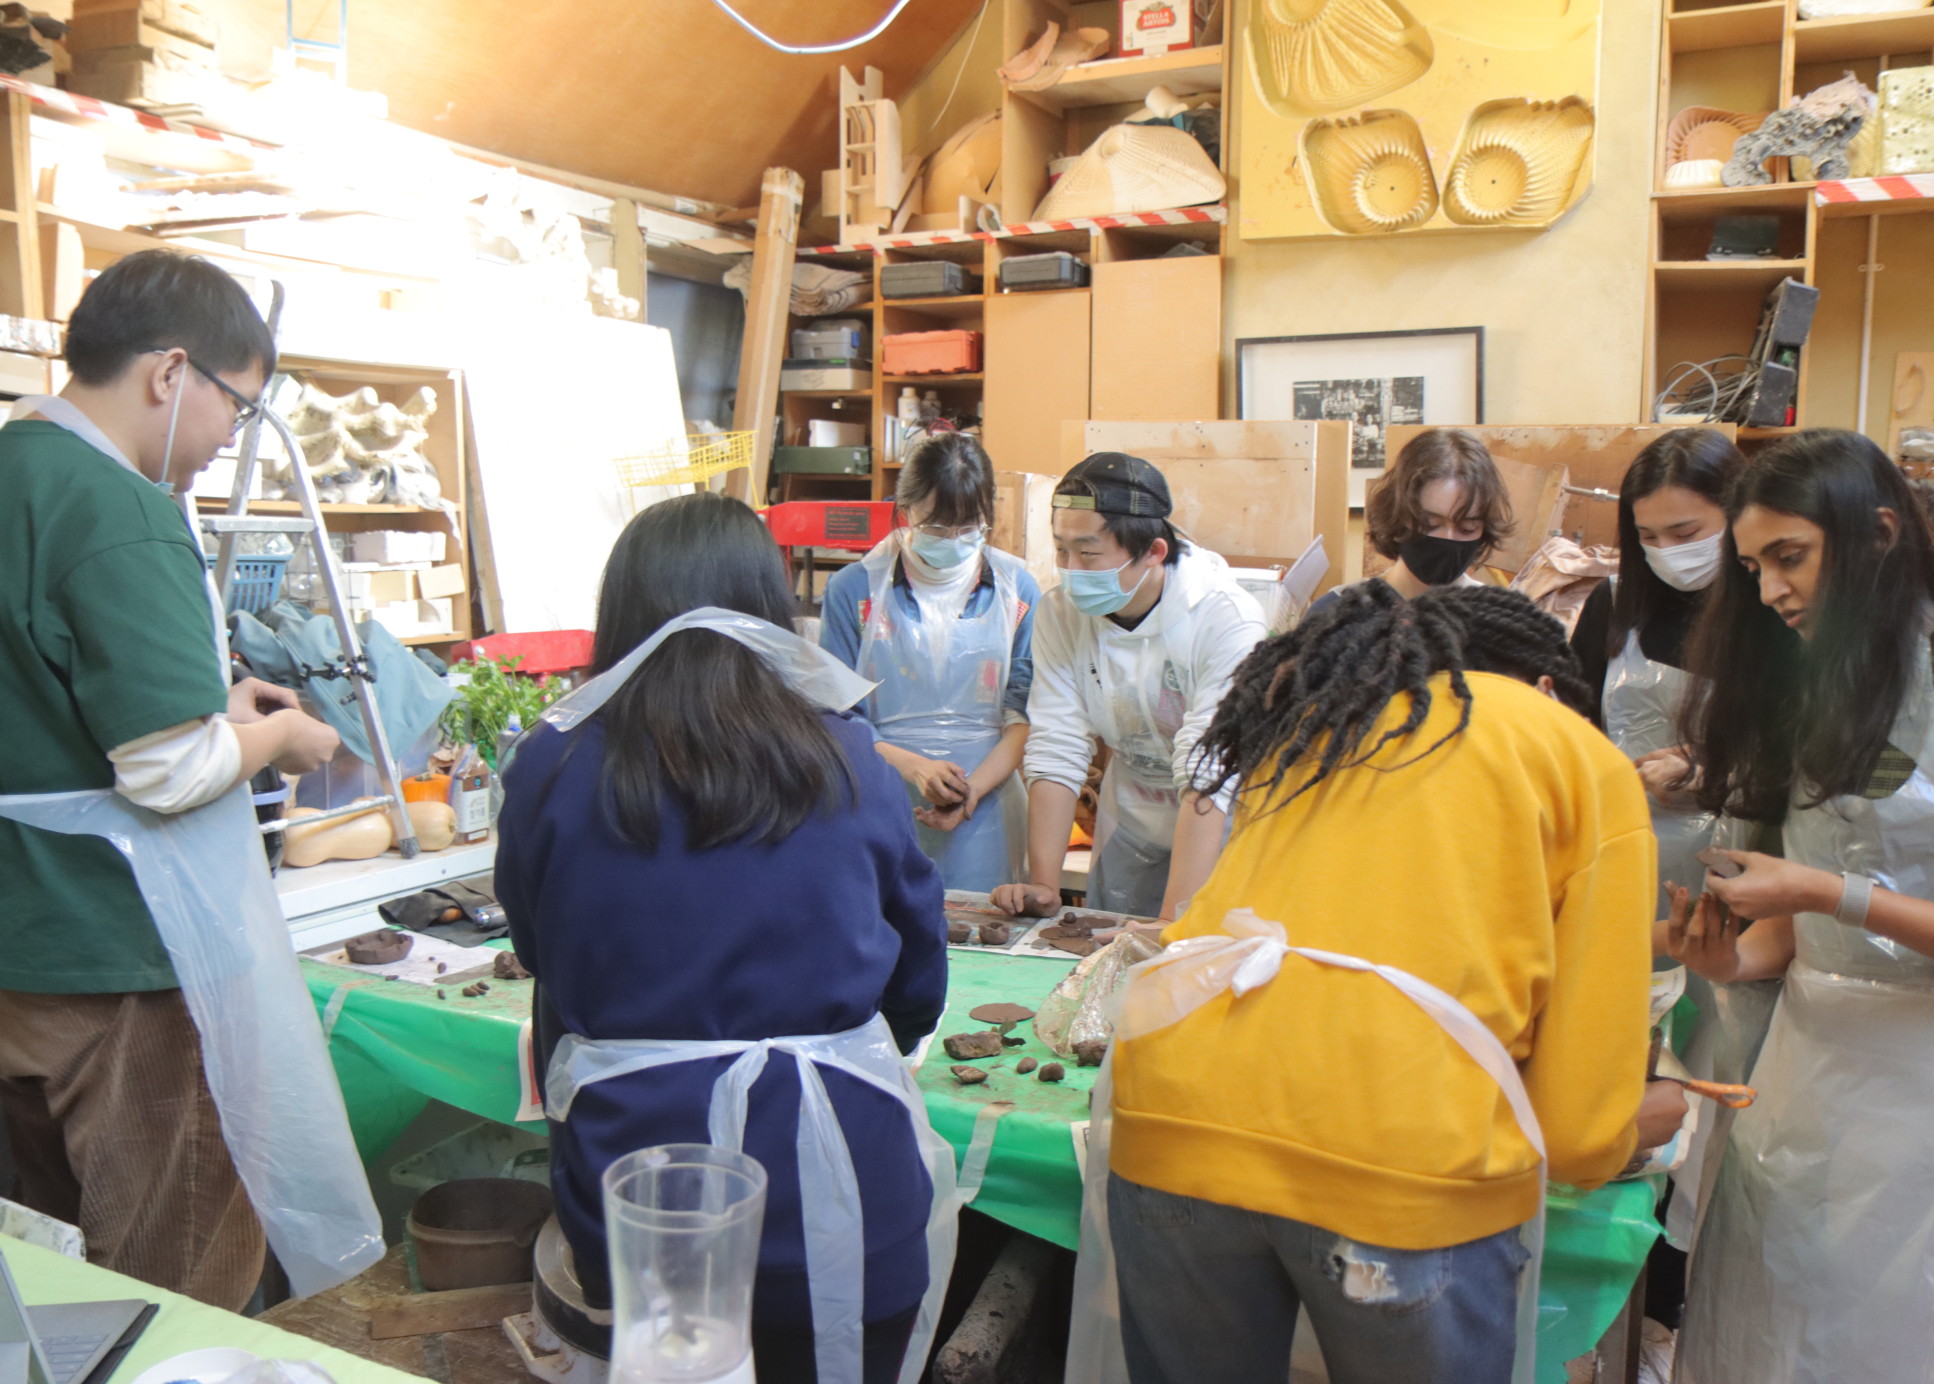 Students make tableware in workshop